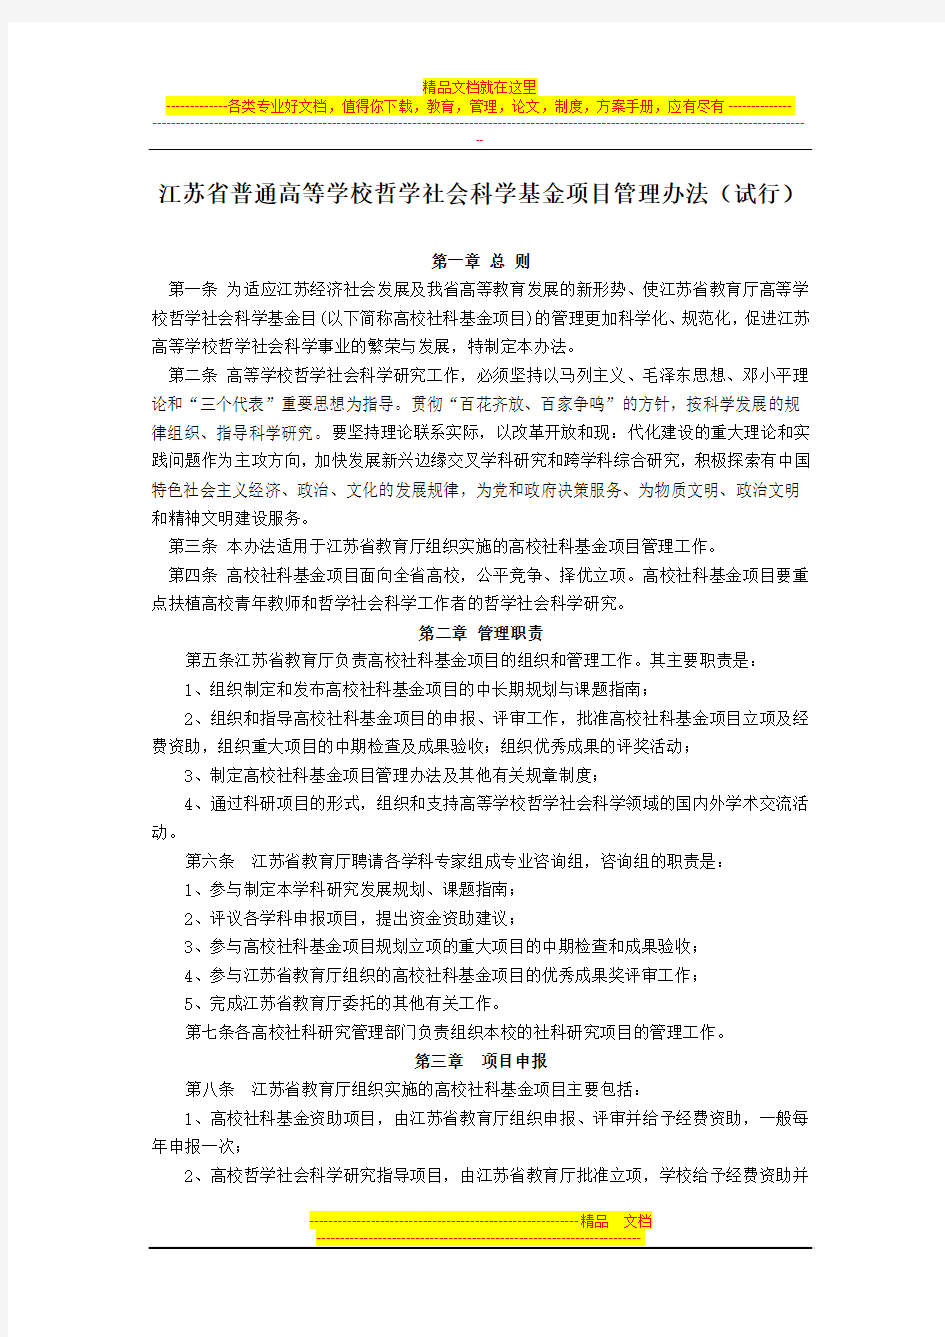 江苏省普通高等学校哲学社会科学基金项目管理办法(试行)